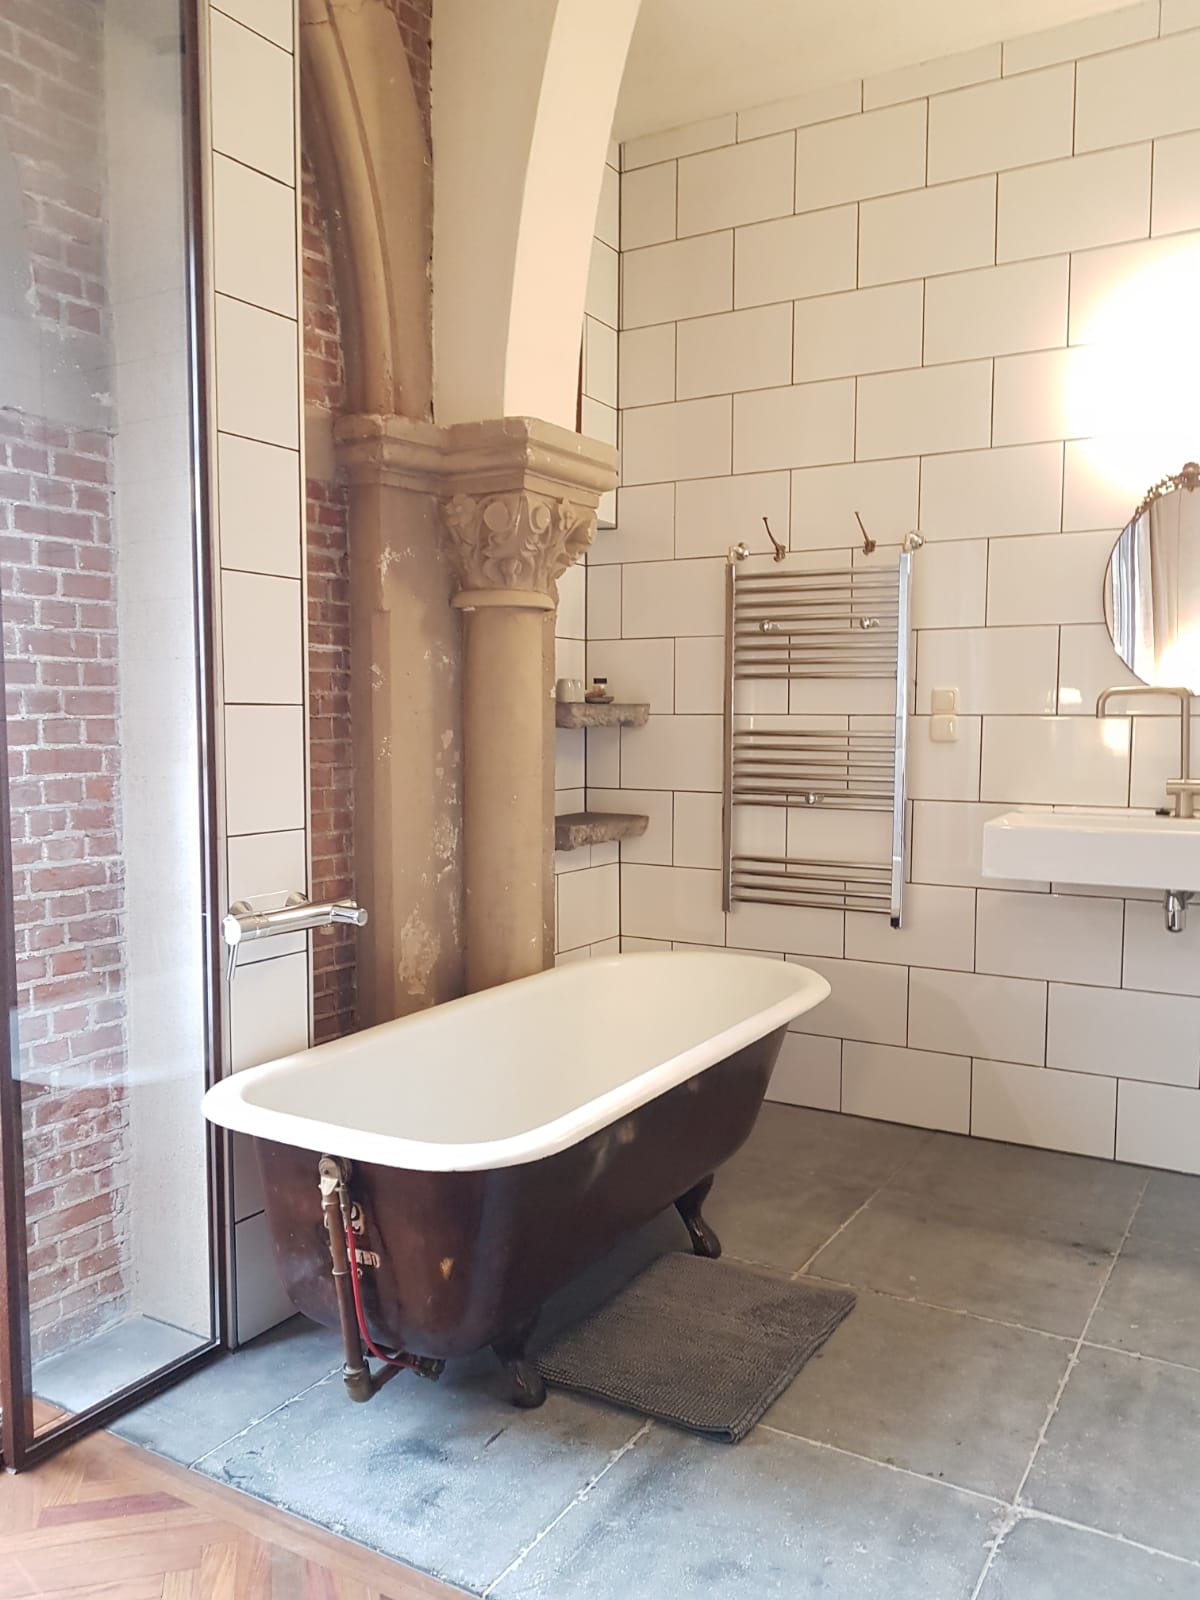 een prachtig oud gietijzeren bad (met erg heet water :) ) in een badkamer met originele elementen van de kerk,
 naast de kerkramen.